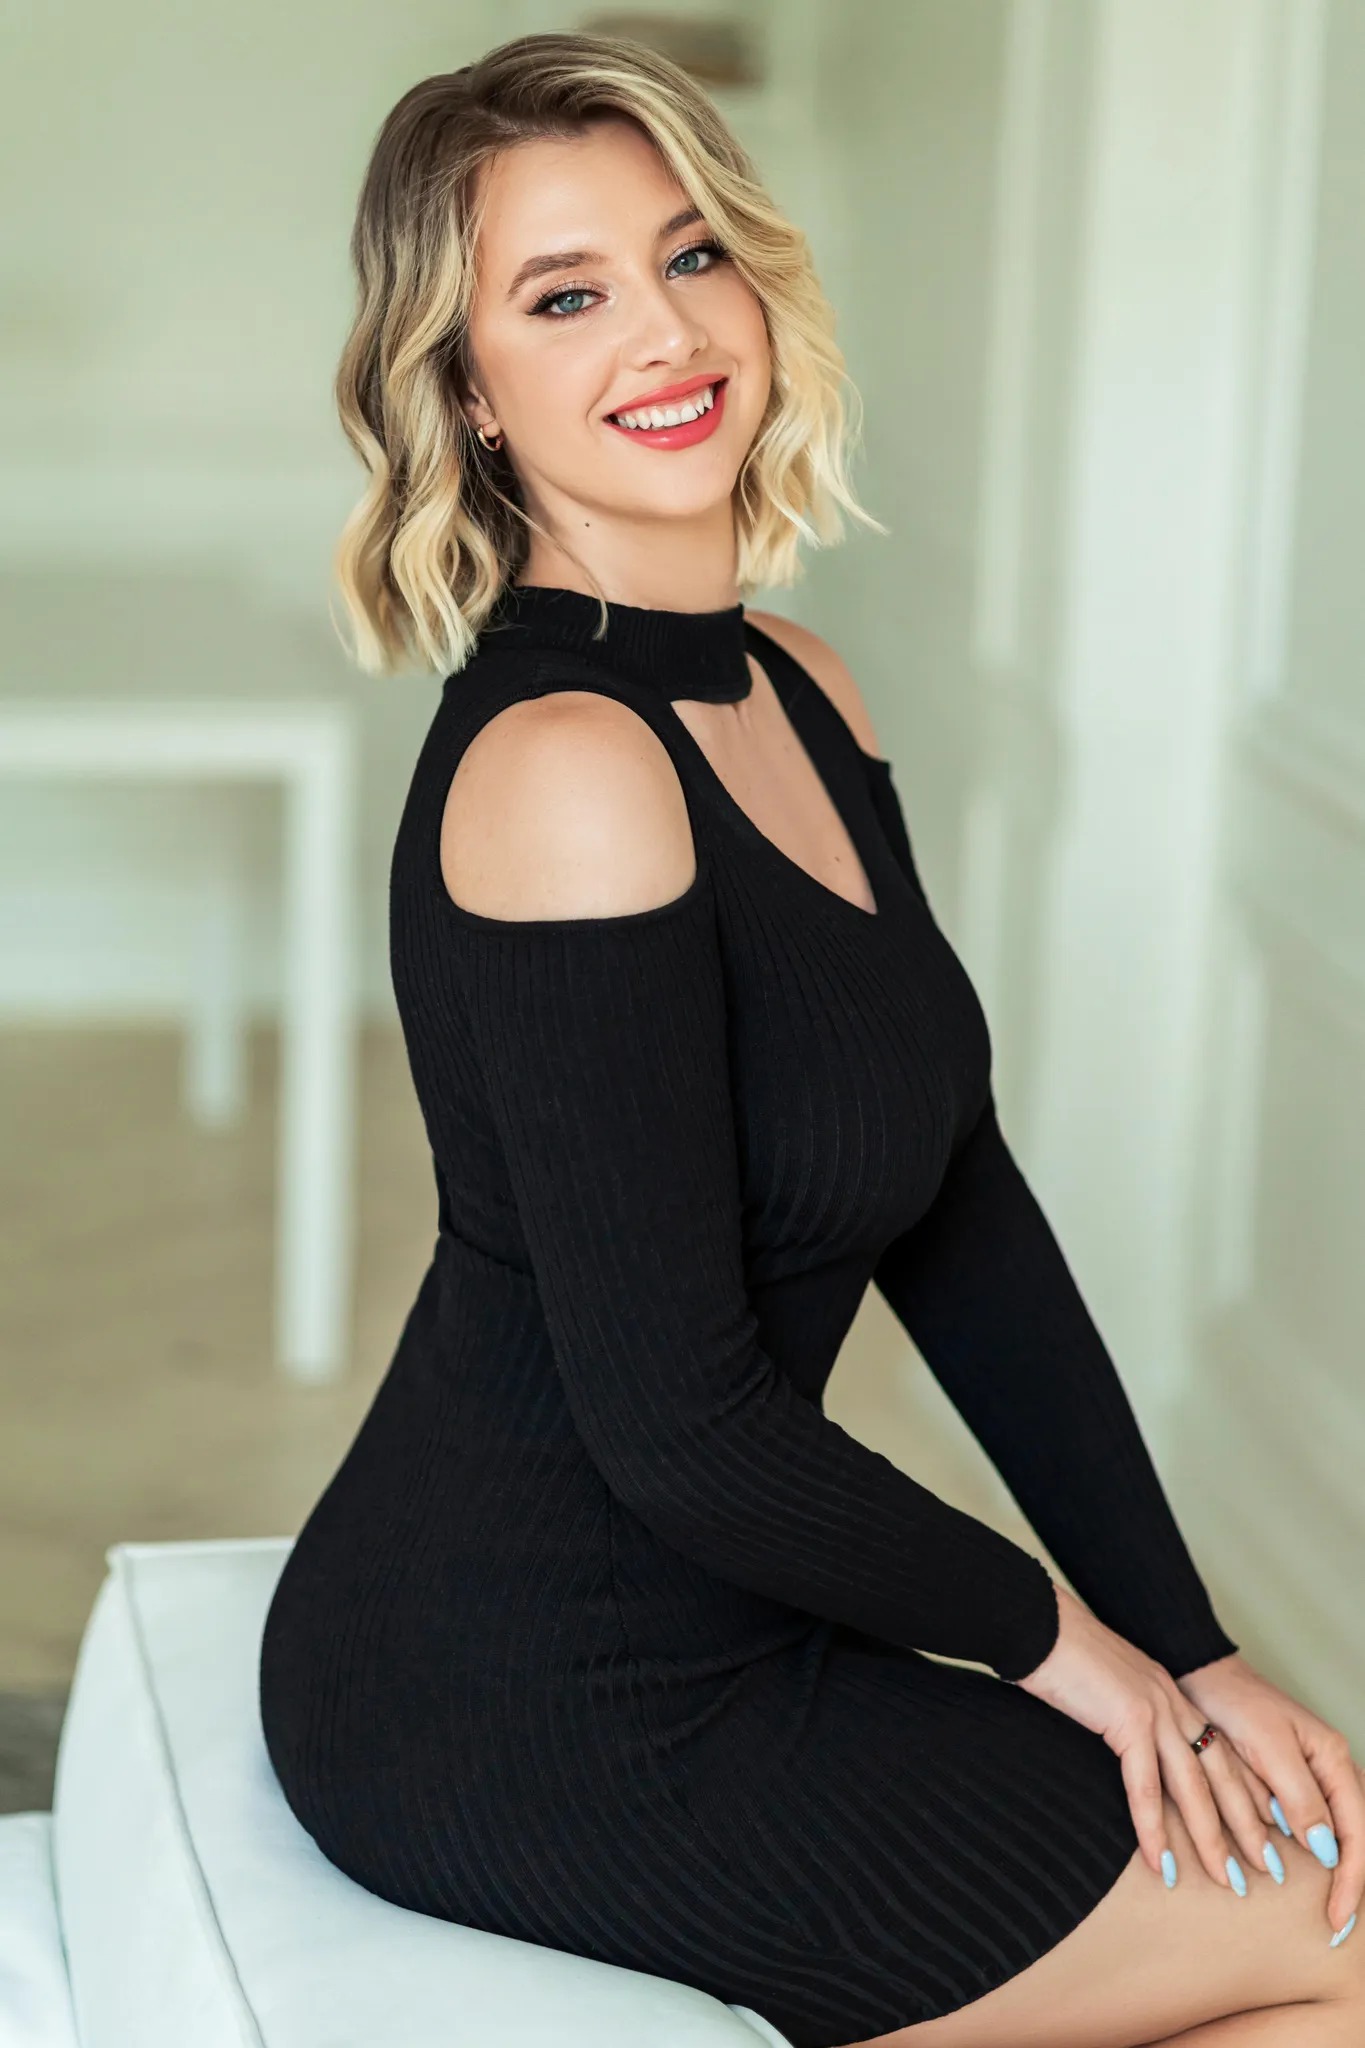 Tatiana russian online dating app